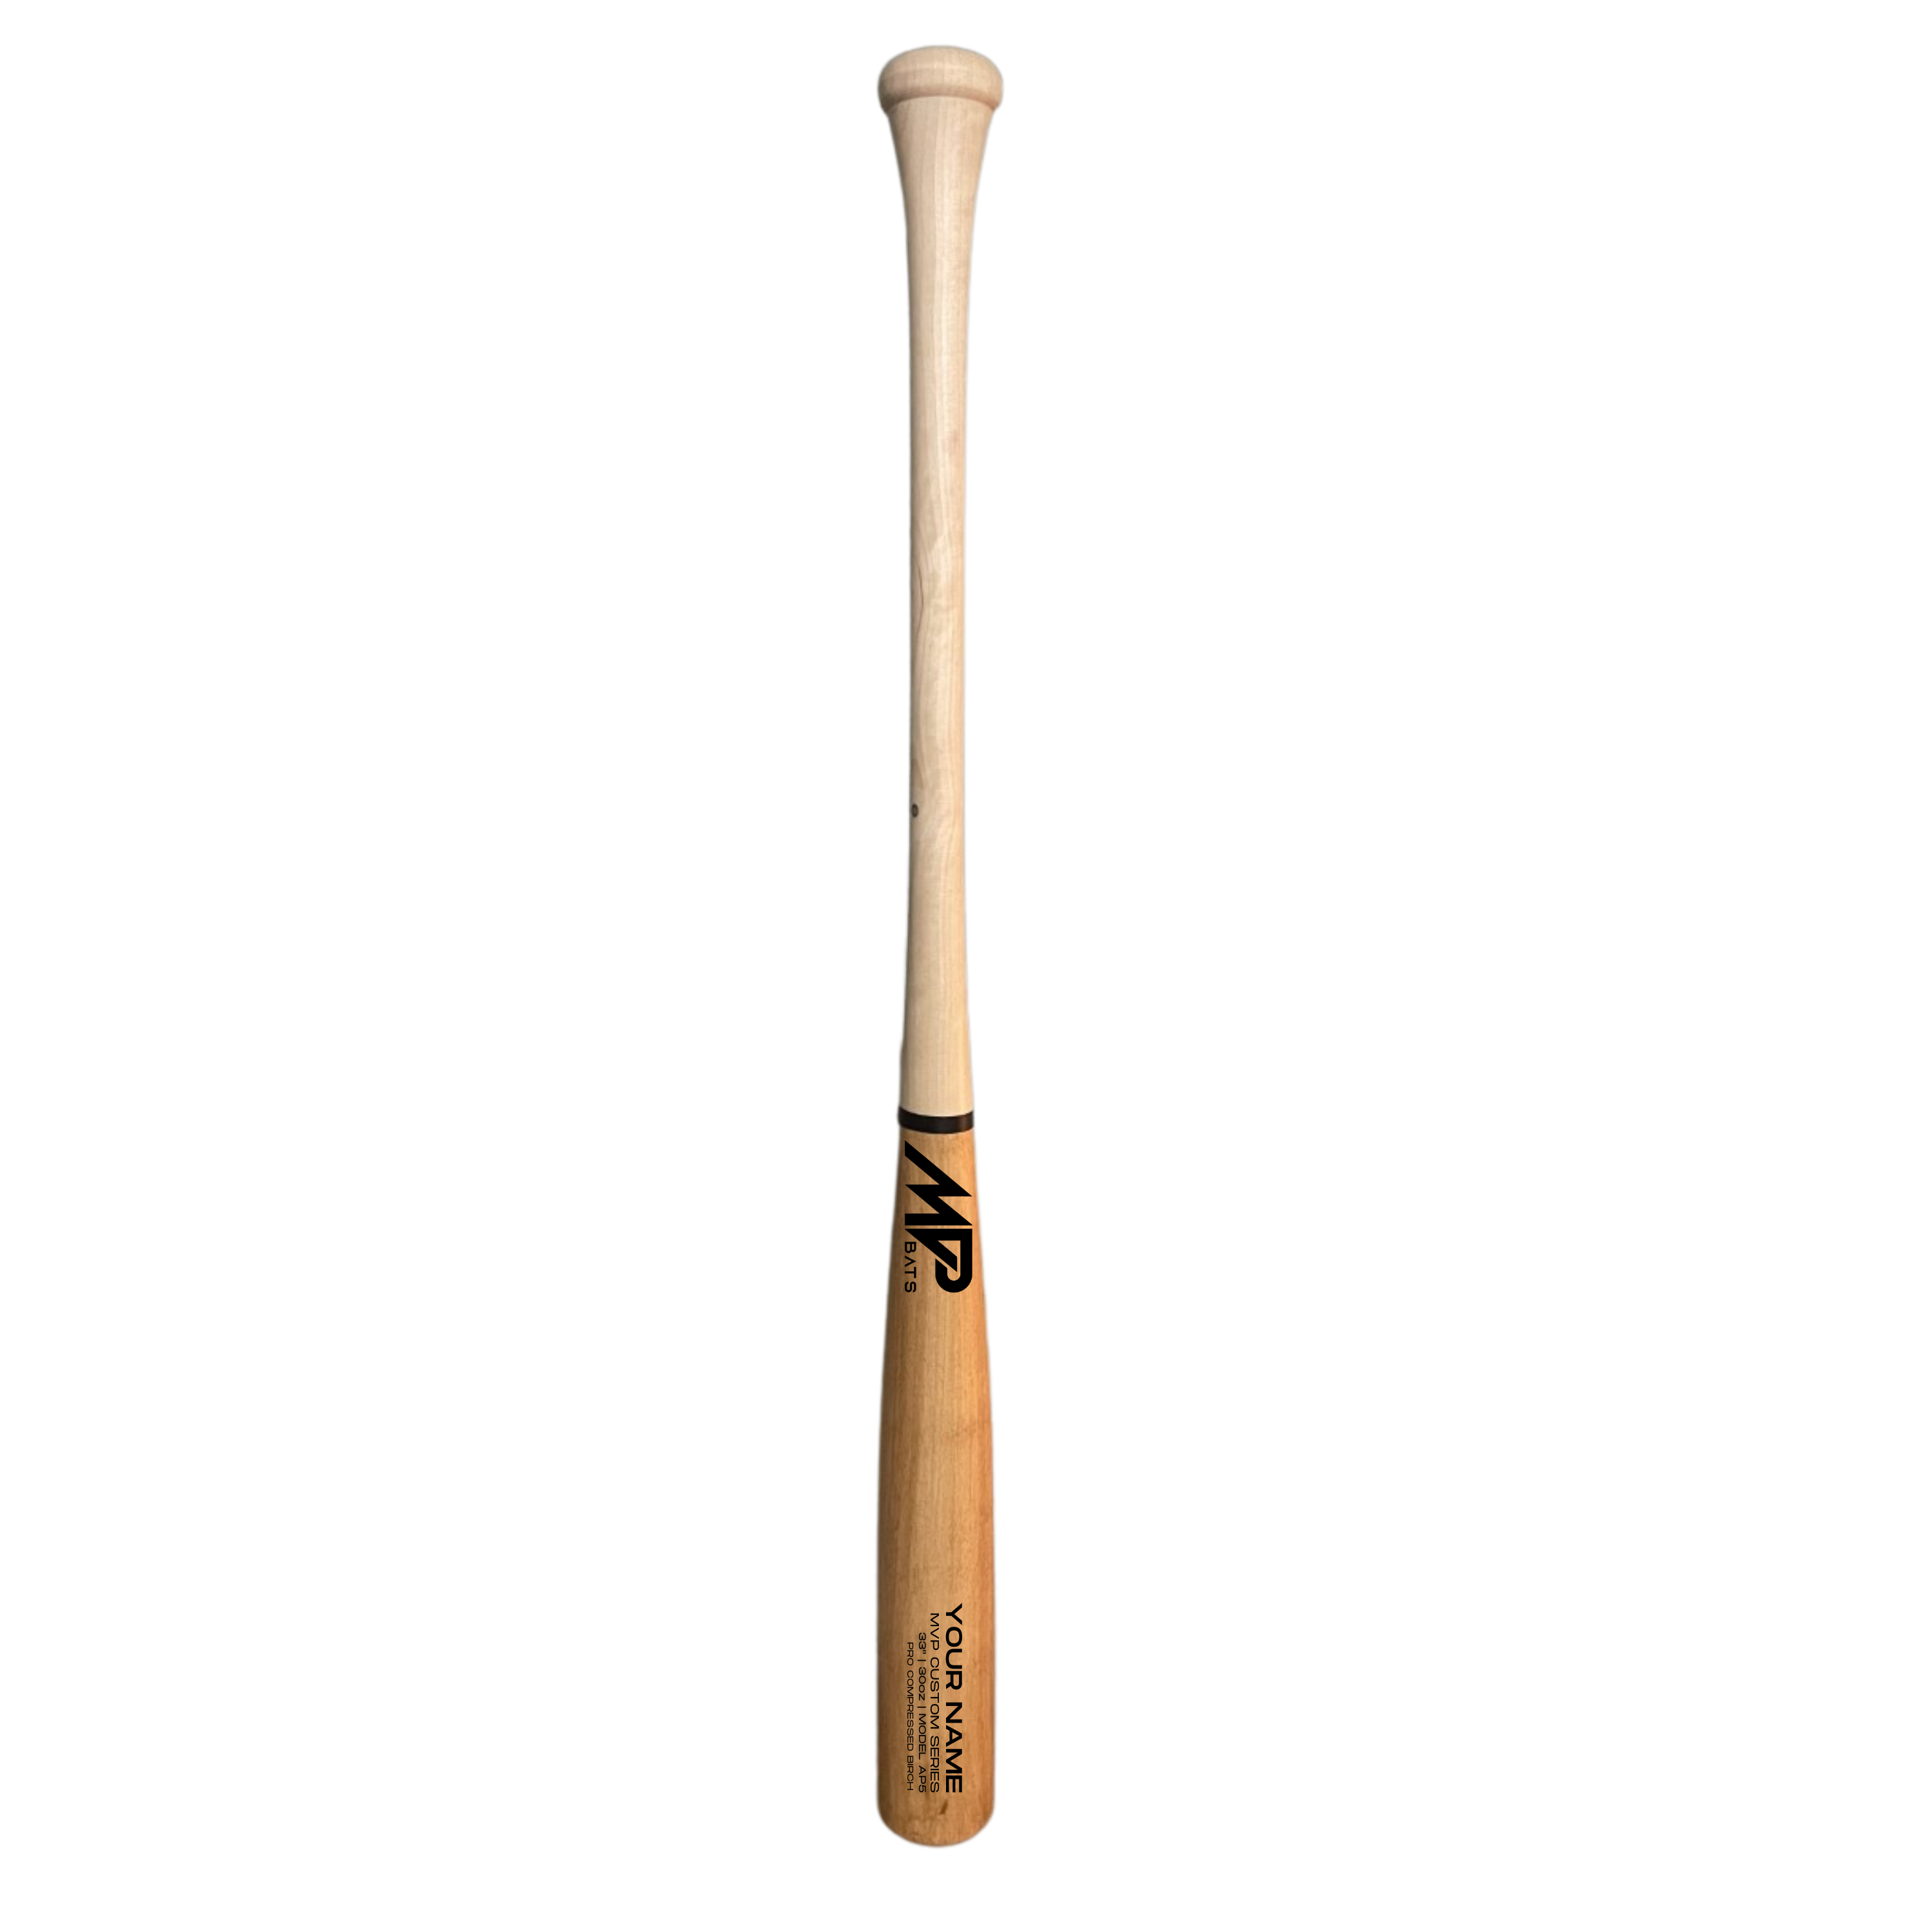 AM22 Wood Baseball Bat, Bats For Power Hitters